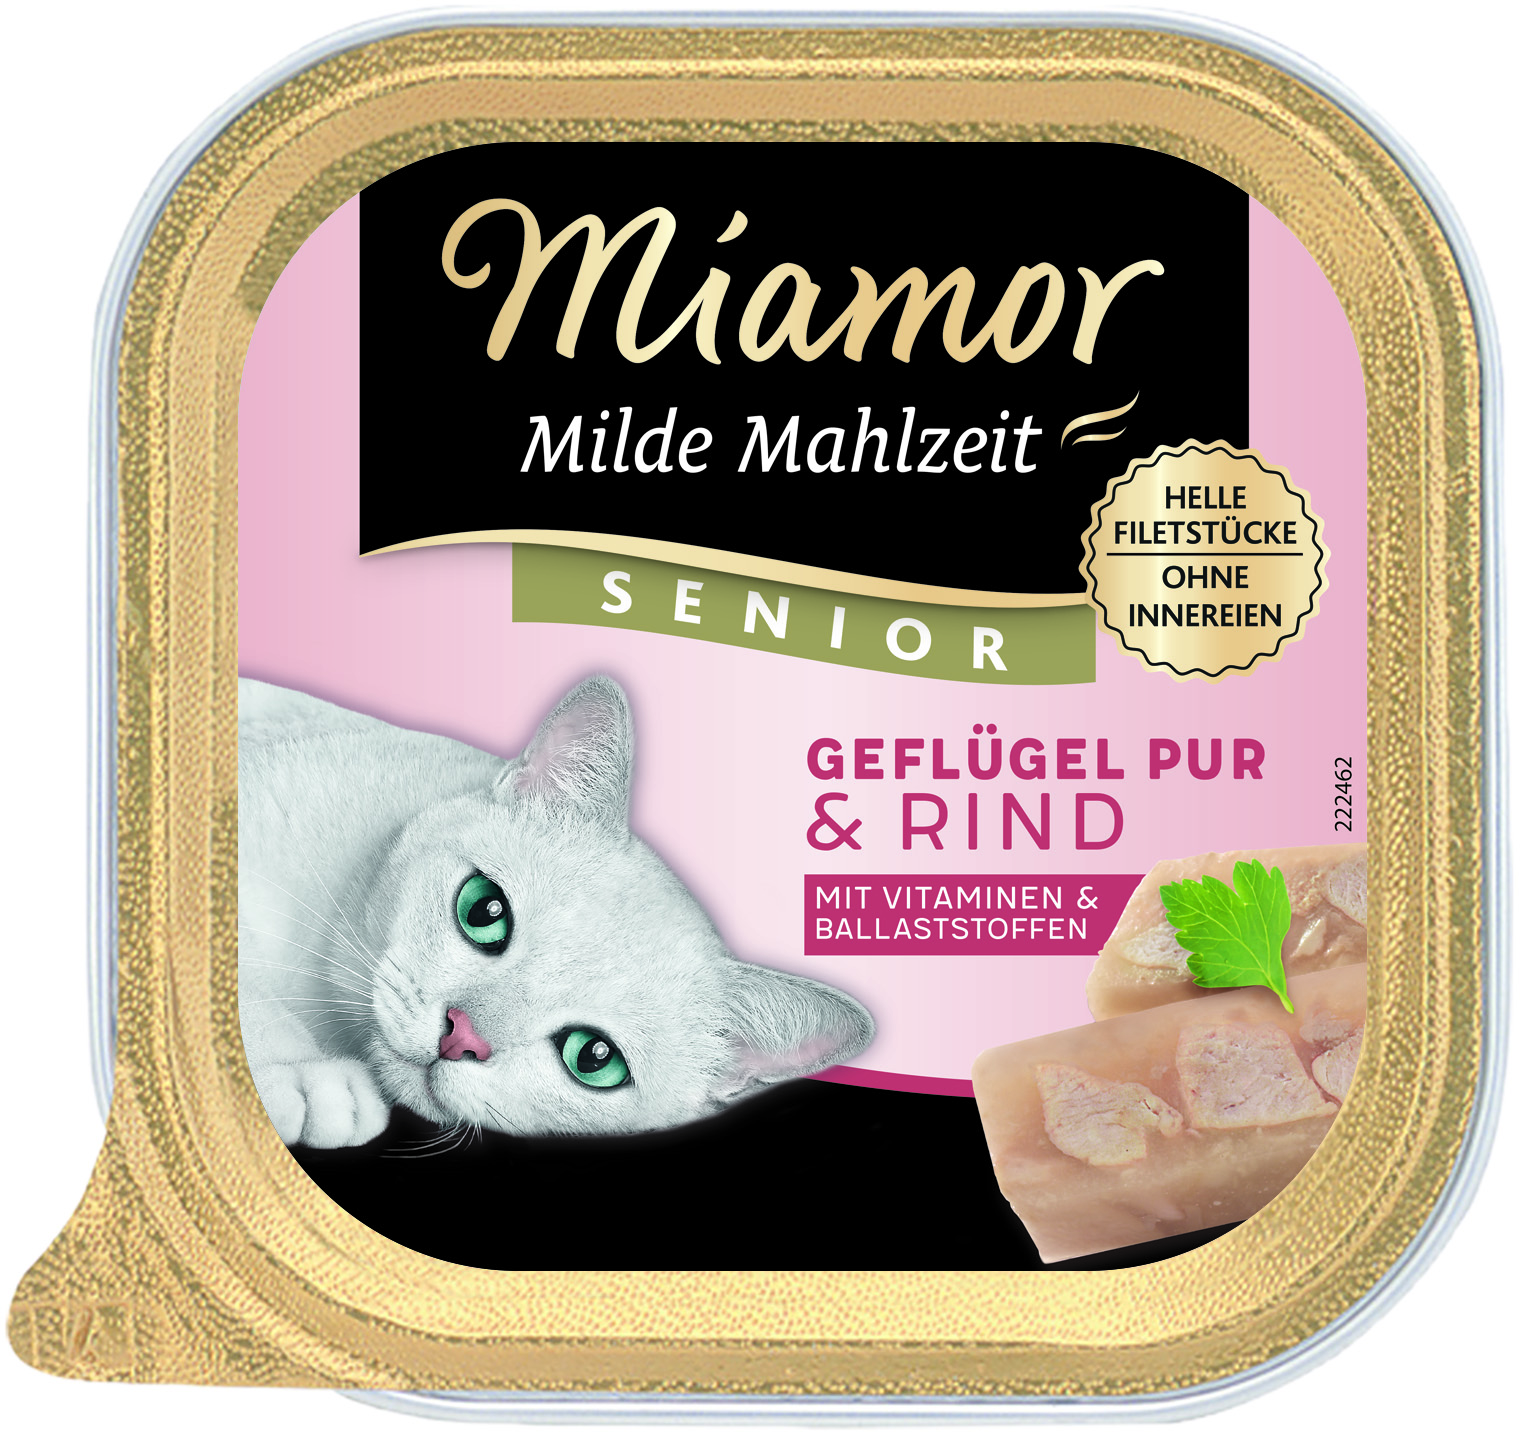 Miamor Milde Mahlzeit Senior Geflügel Pur & Rind 100g